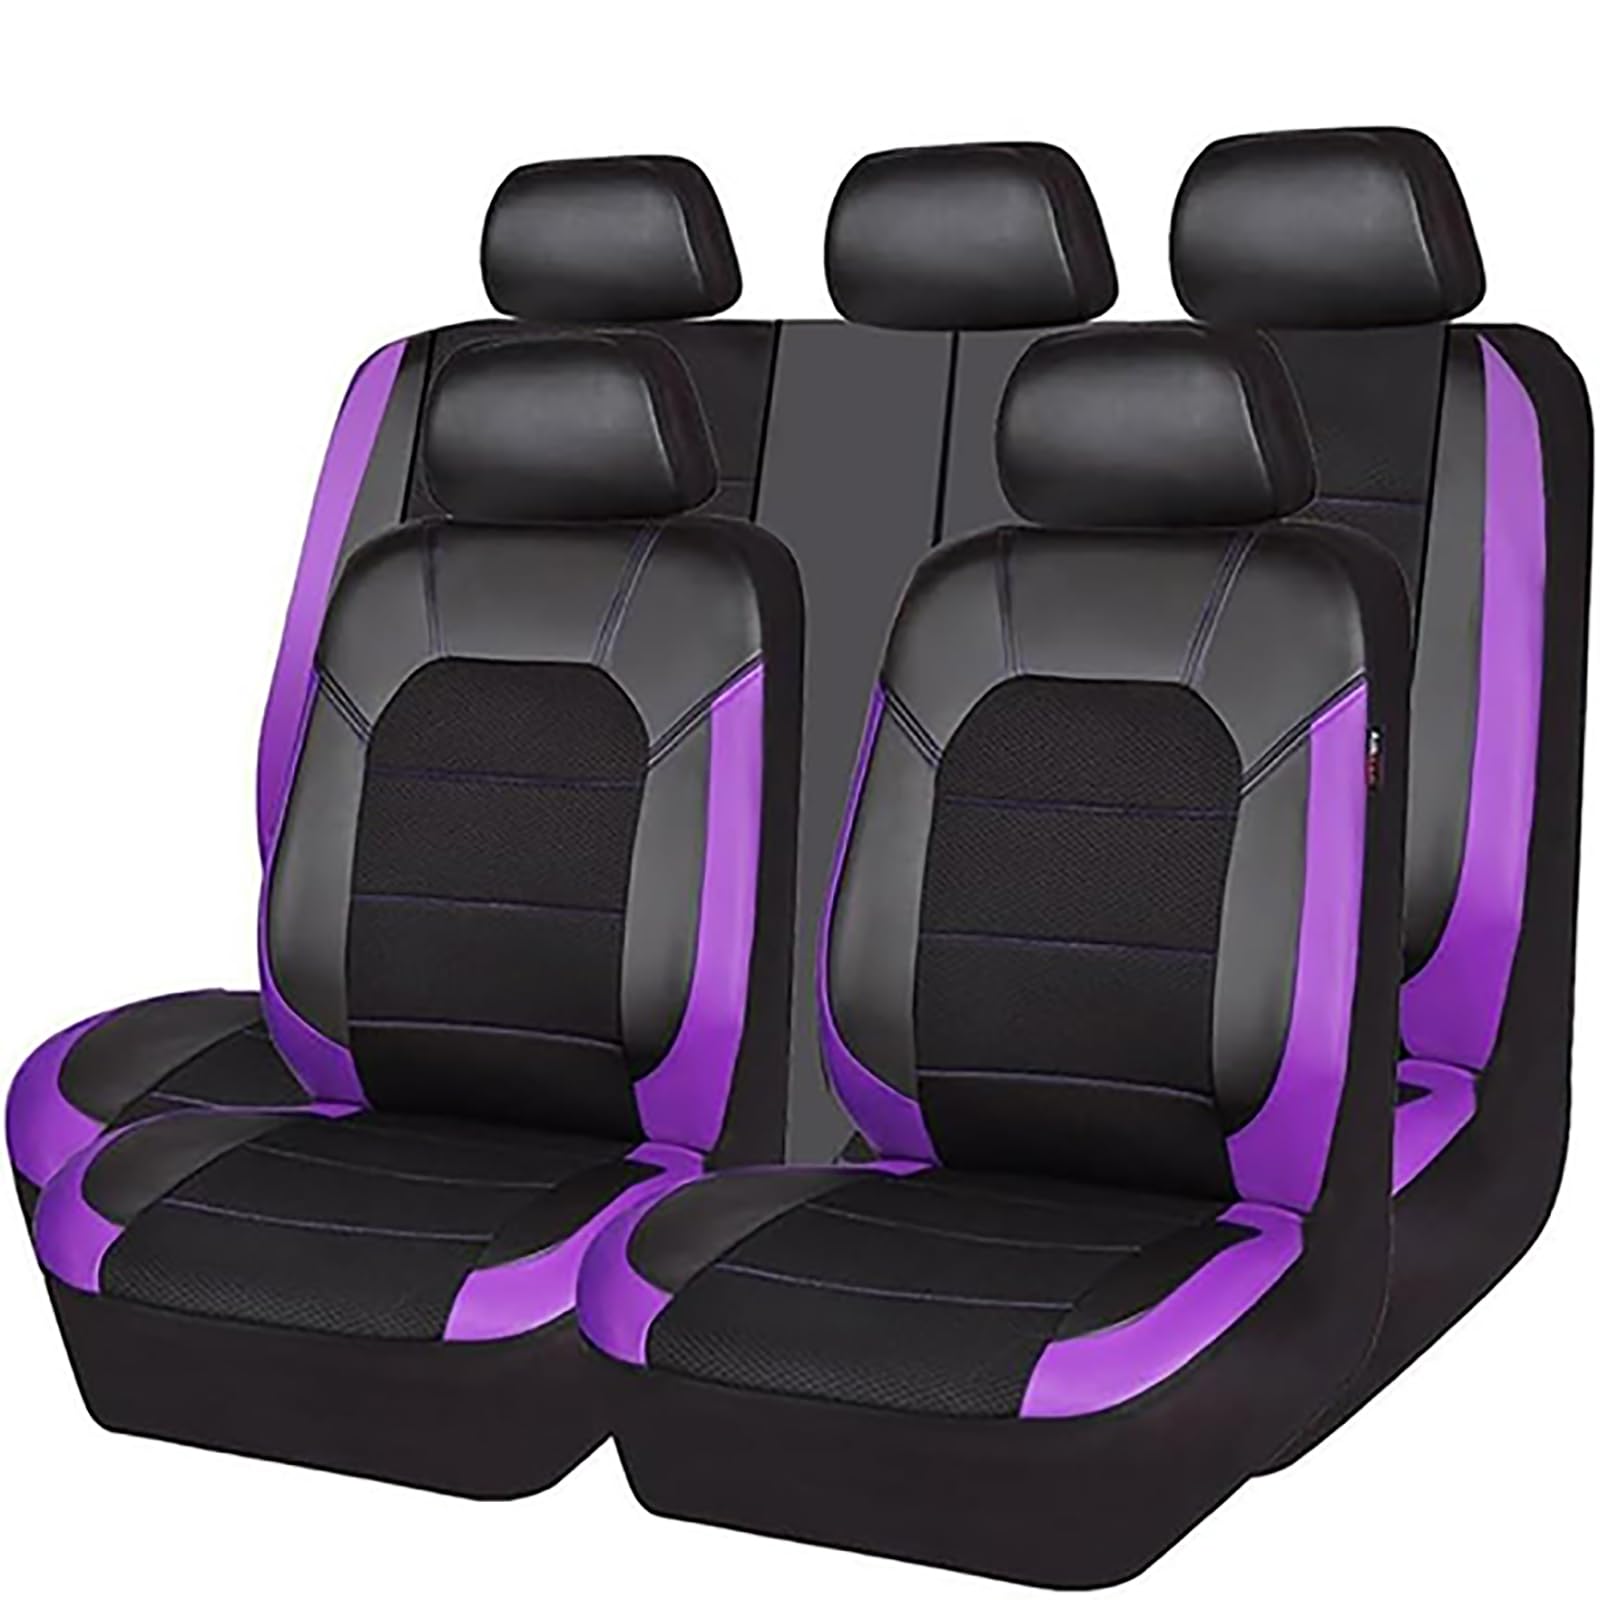 YZECEBNF Auto Sitzbezüge Set Für BMW E46 E90 E39 E60 E36, Universal Autositzbezüge Vorne RüCken Sitzschutz Sitzkissen Waschbarer Anti Rutsch Innenraum Zubehör,E/Purple von YZECEBNF